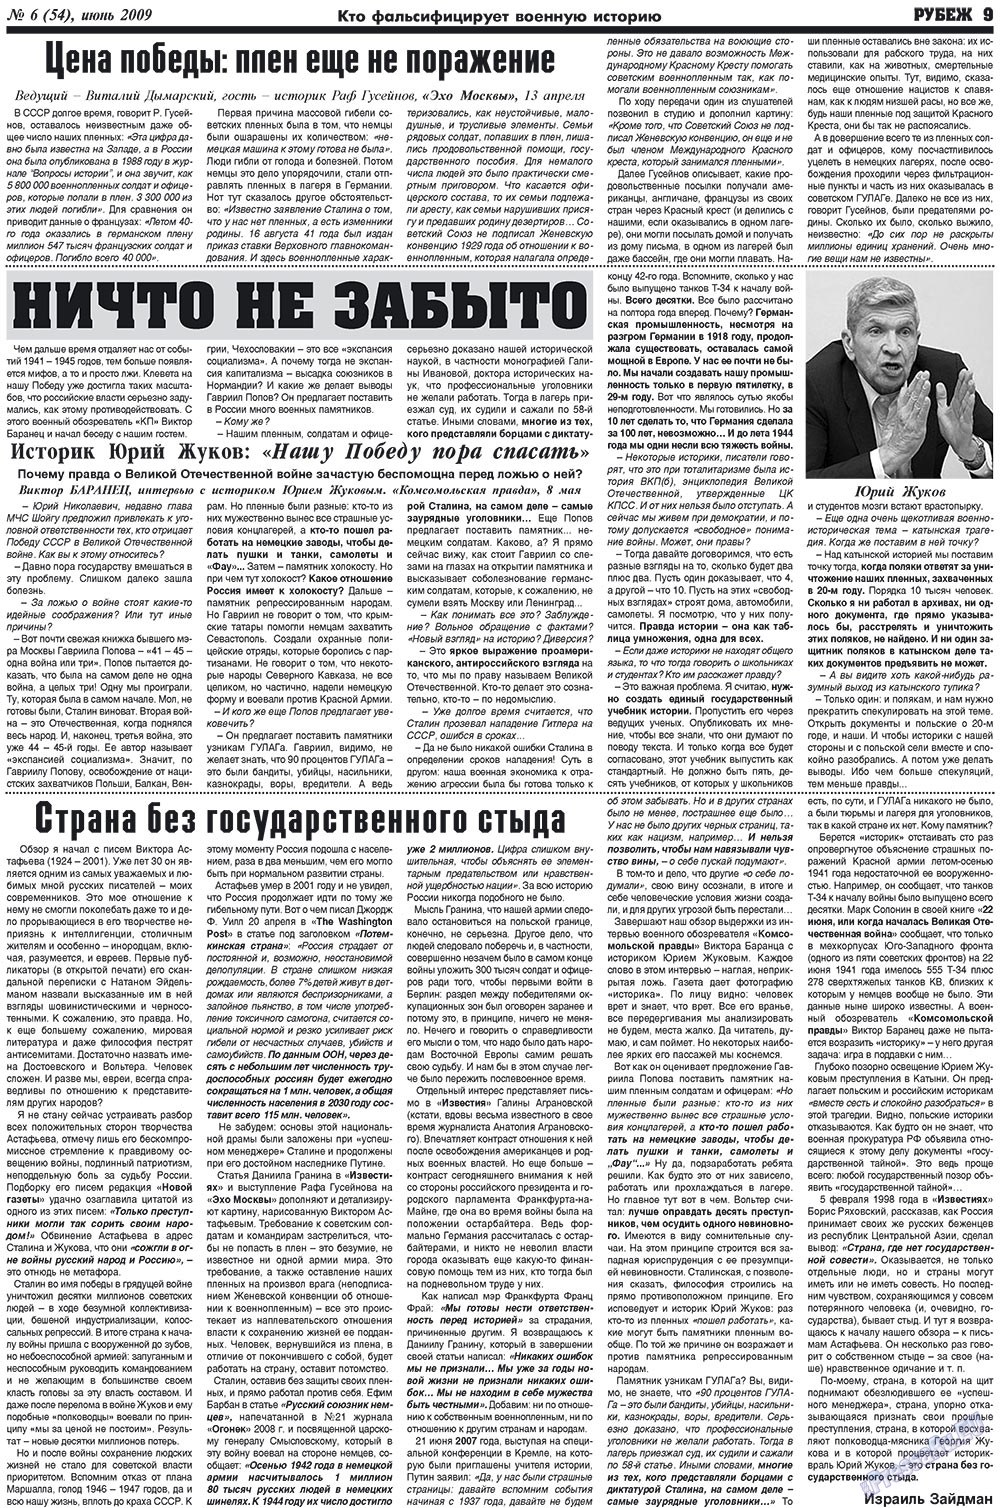 Рубеж (газета). 2009 год, номер 6, стр. 9